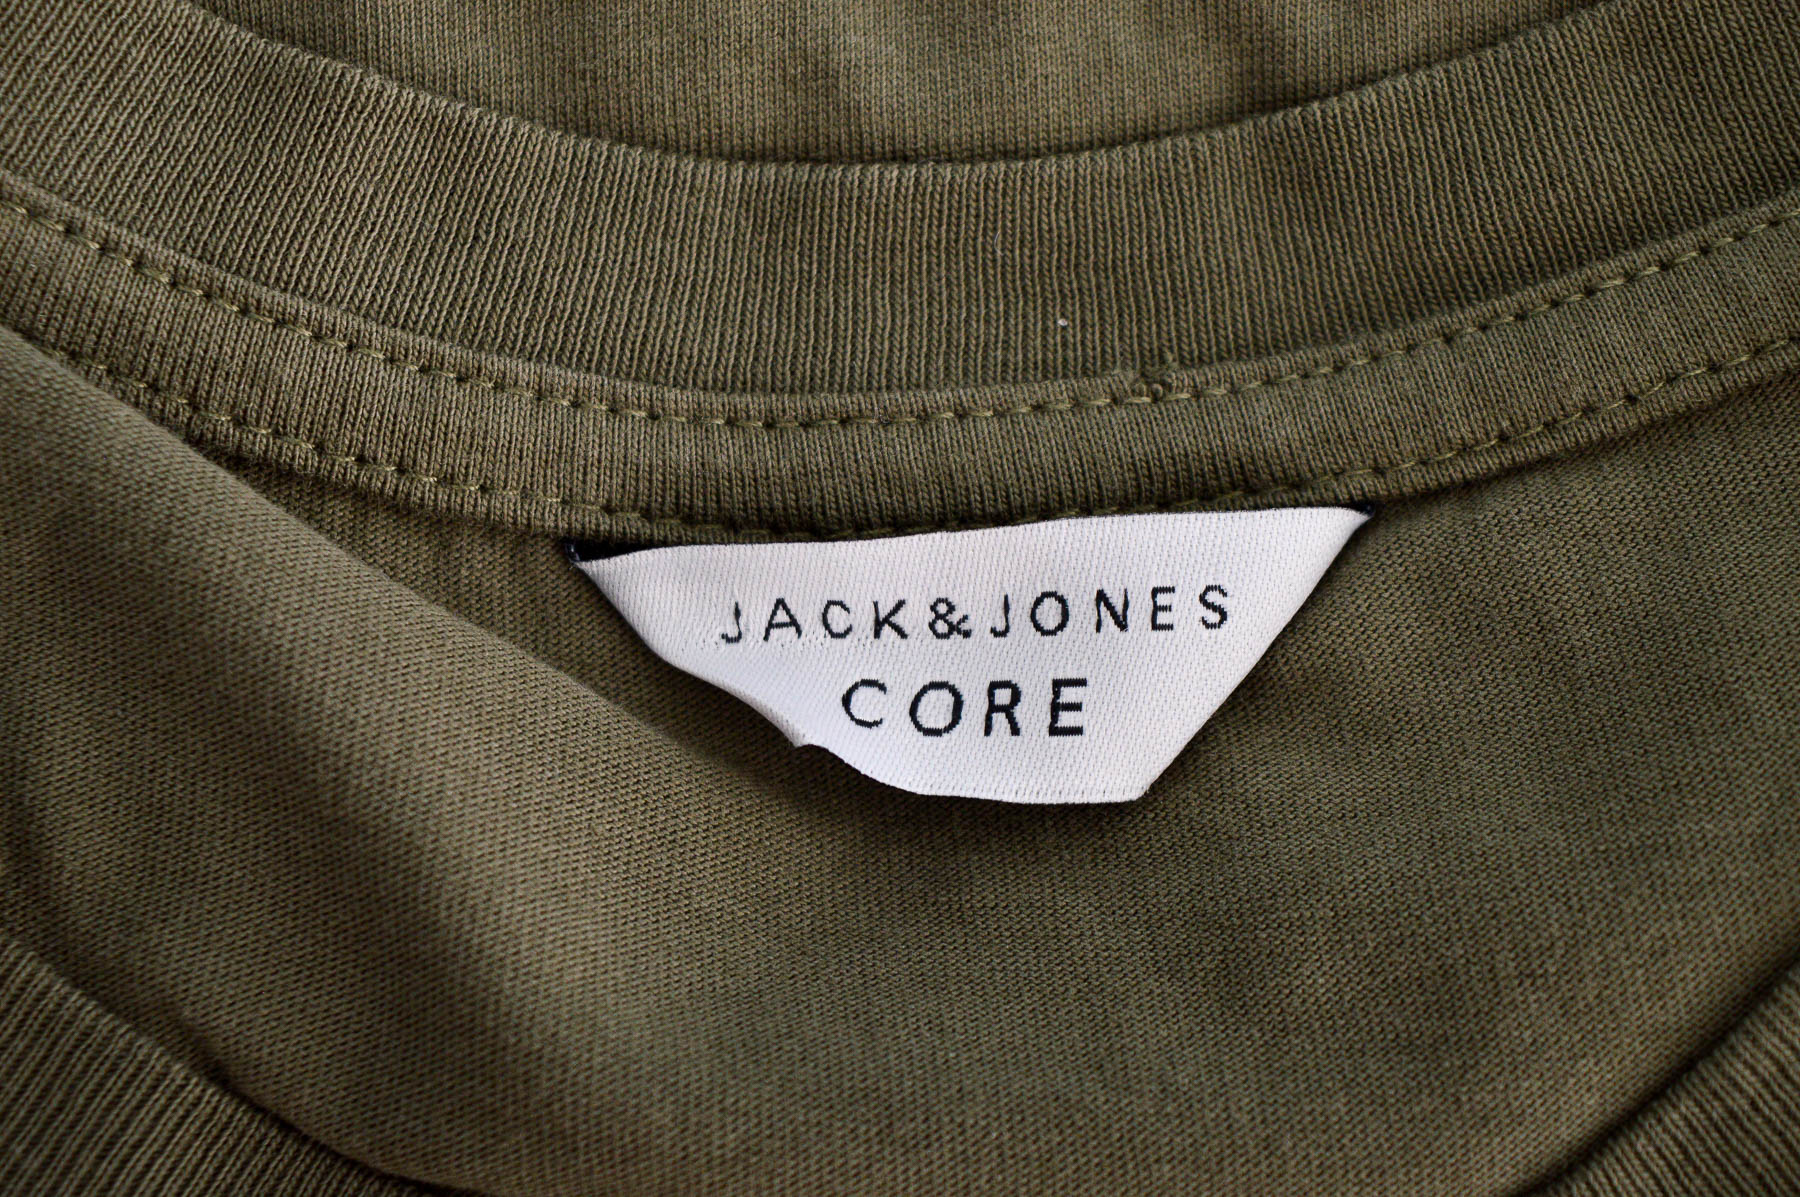 Bluzka męska - CORE by Jack & Jones - 2